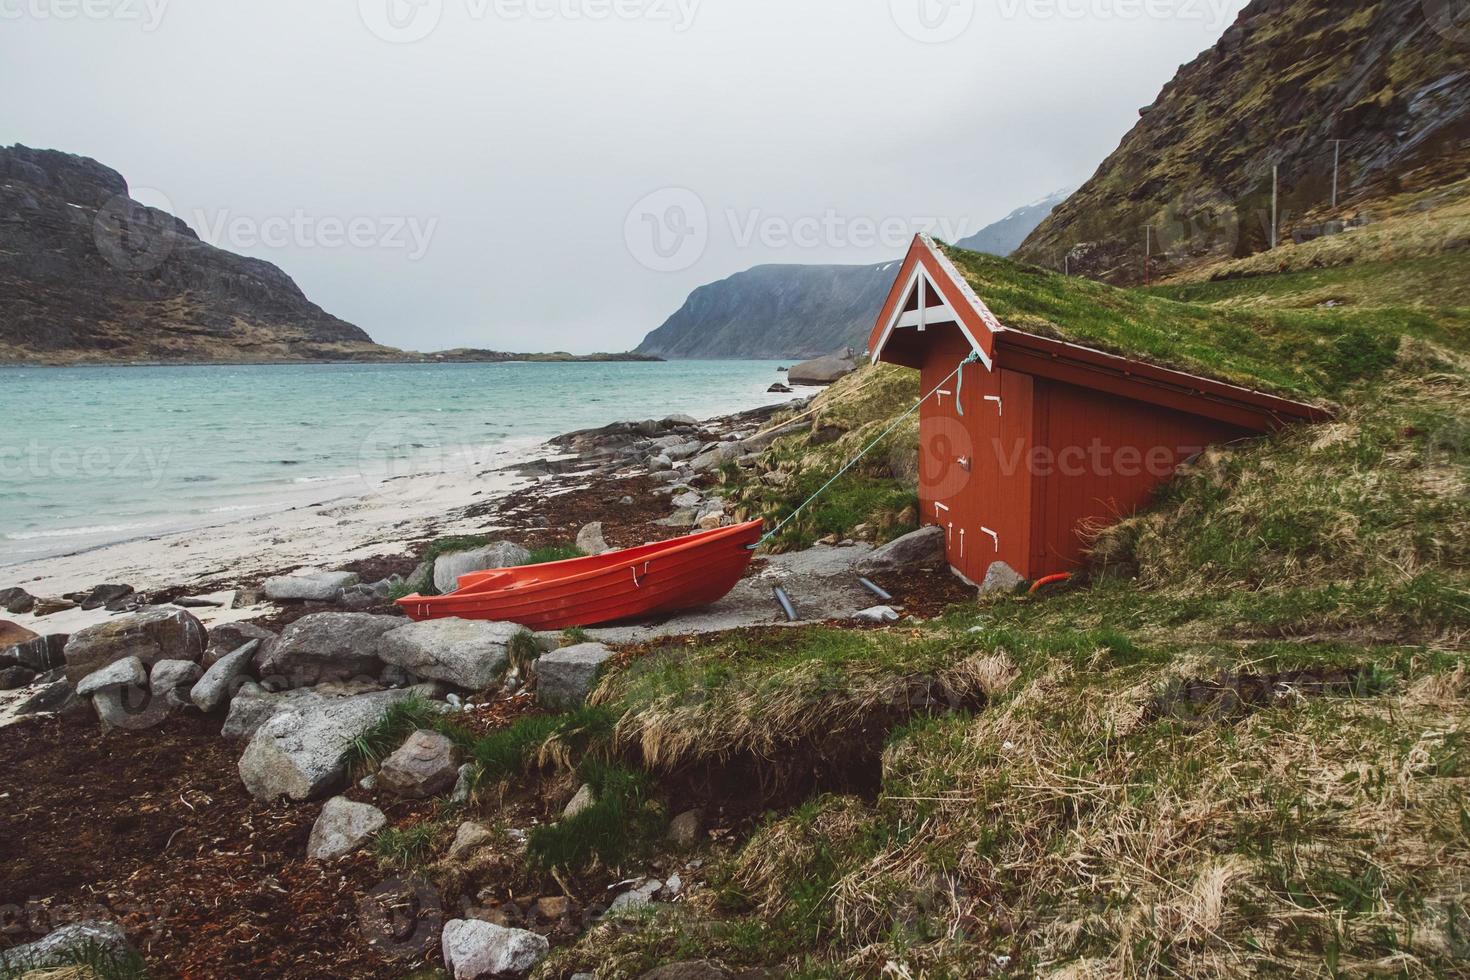 casa vermelha com musgo no telhado e barco no fundo do mar e da montanha foto